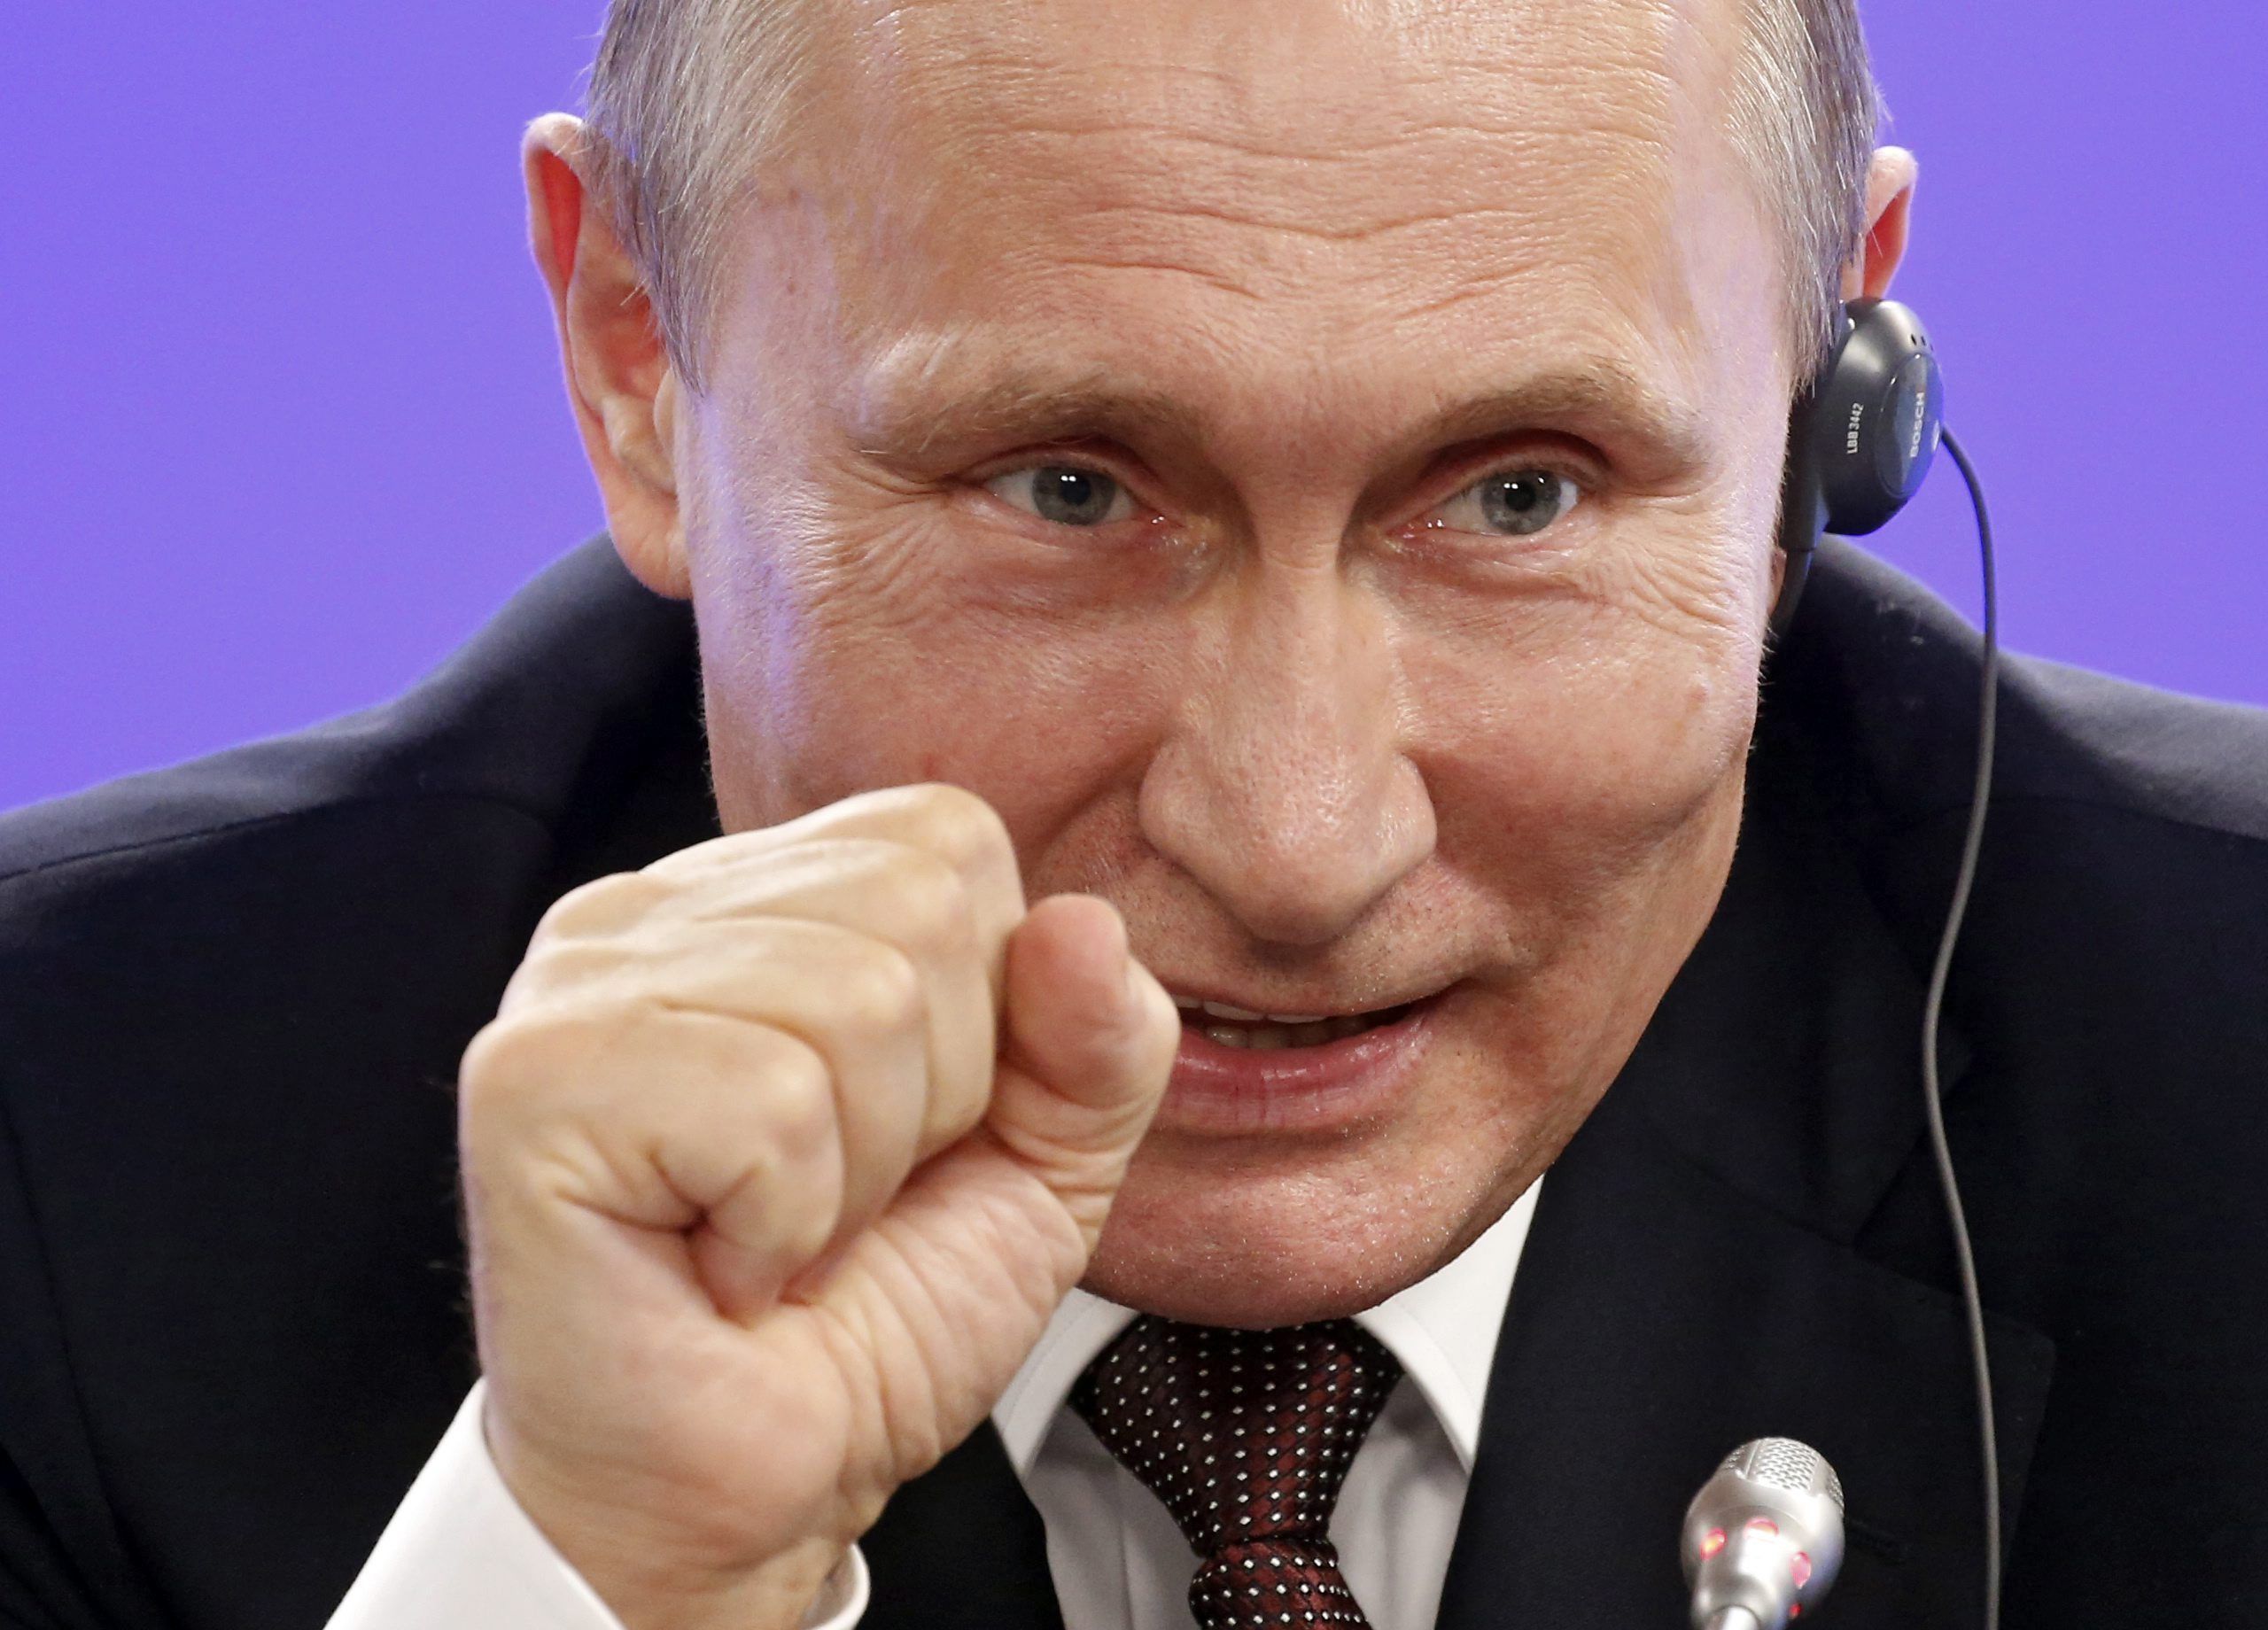 Putin repeteix per quart any consecutiu com la persona més poderosa del món, segons 'Forbes'